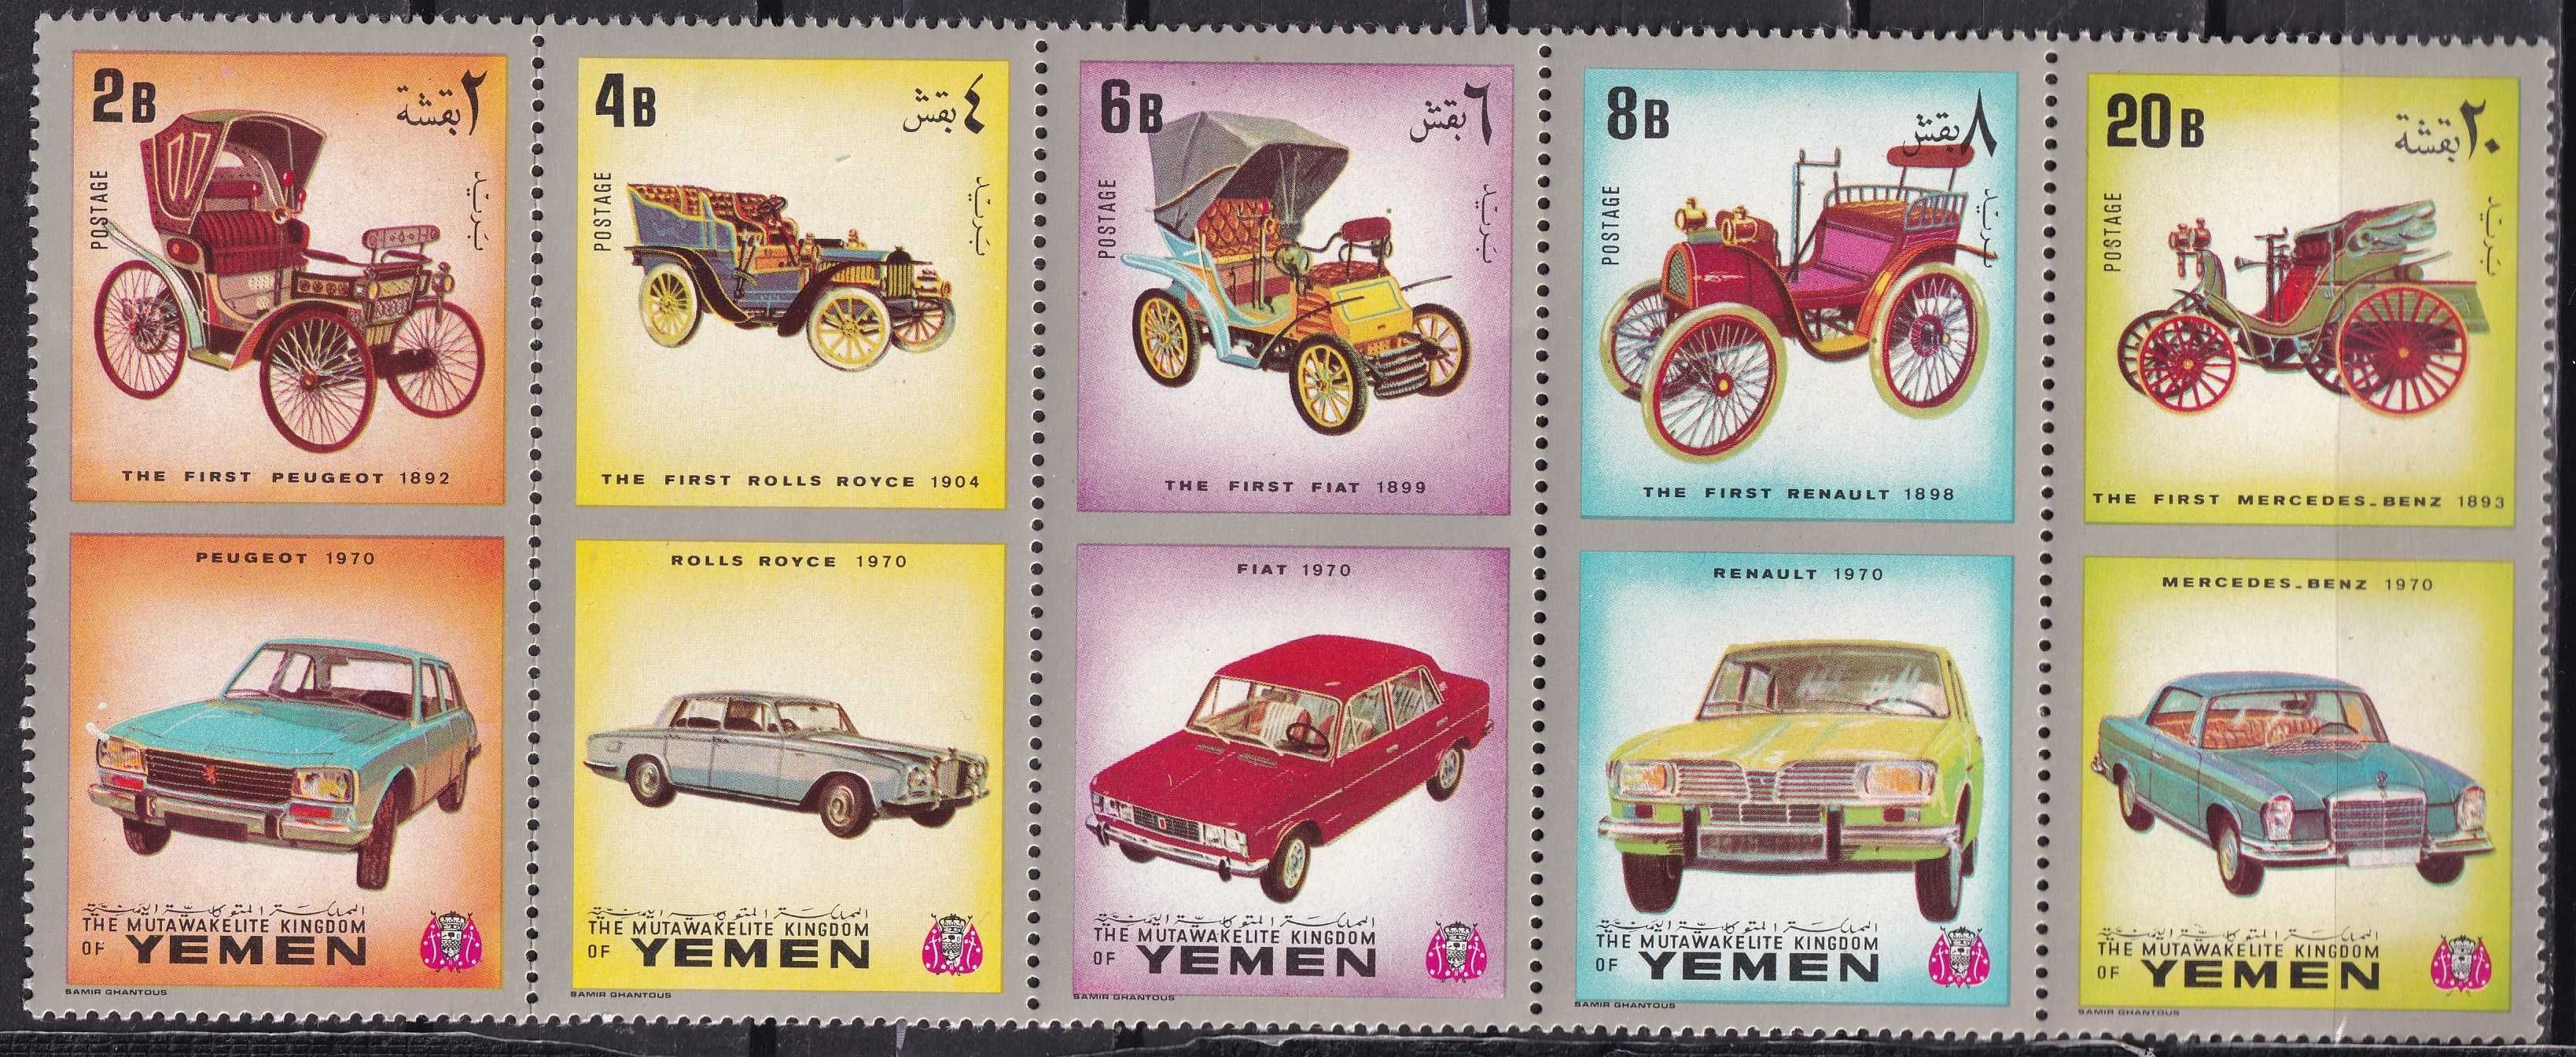 znaczki pocztowe - Jemen 1970 cena 4,90 zł - samochody